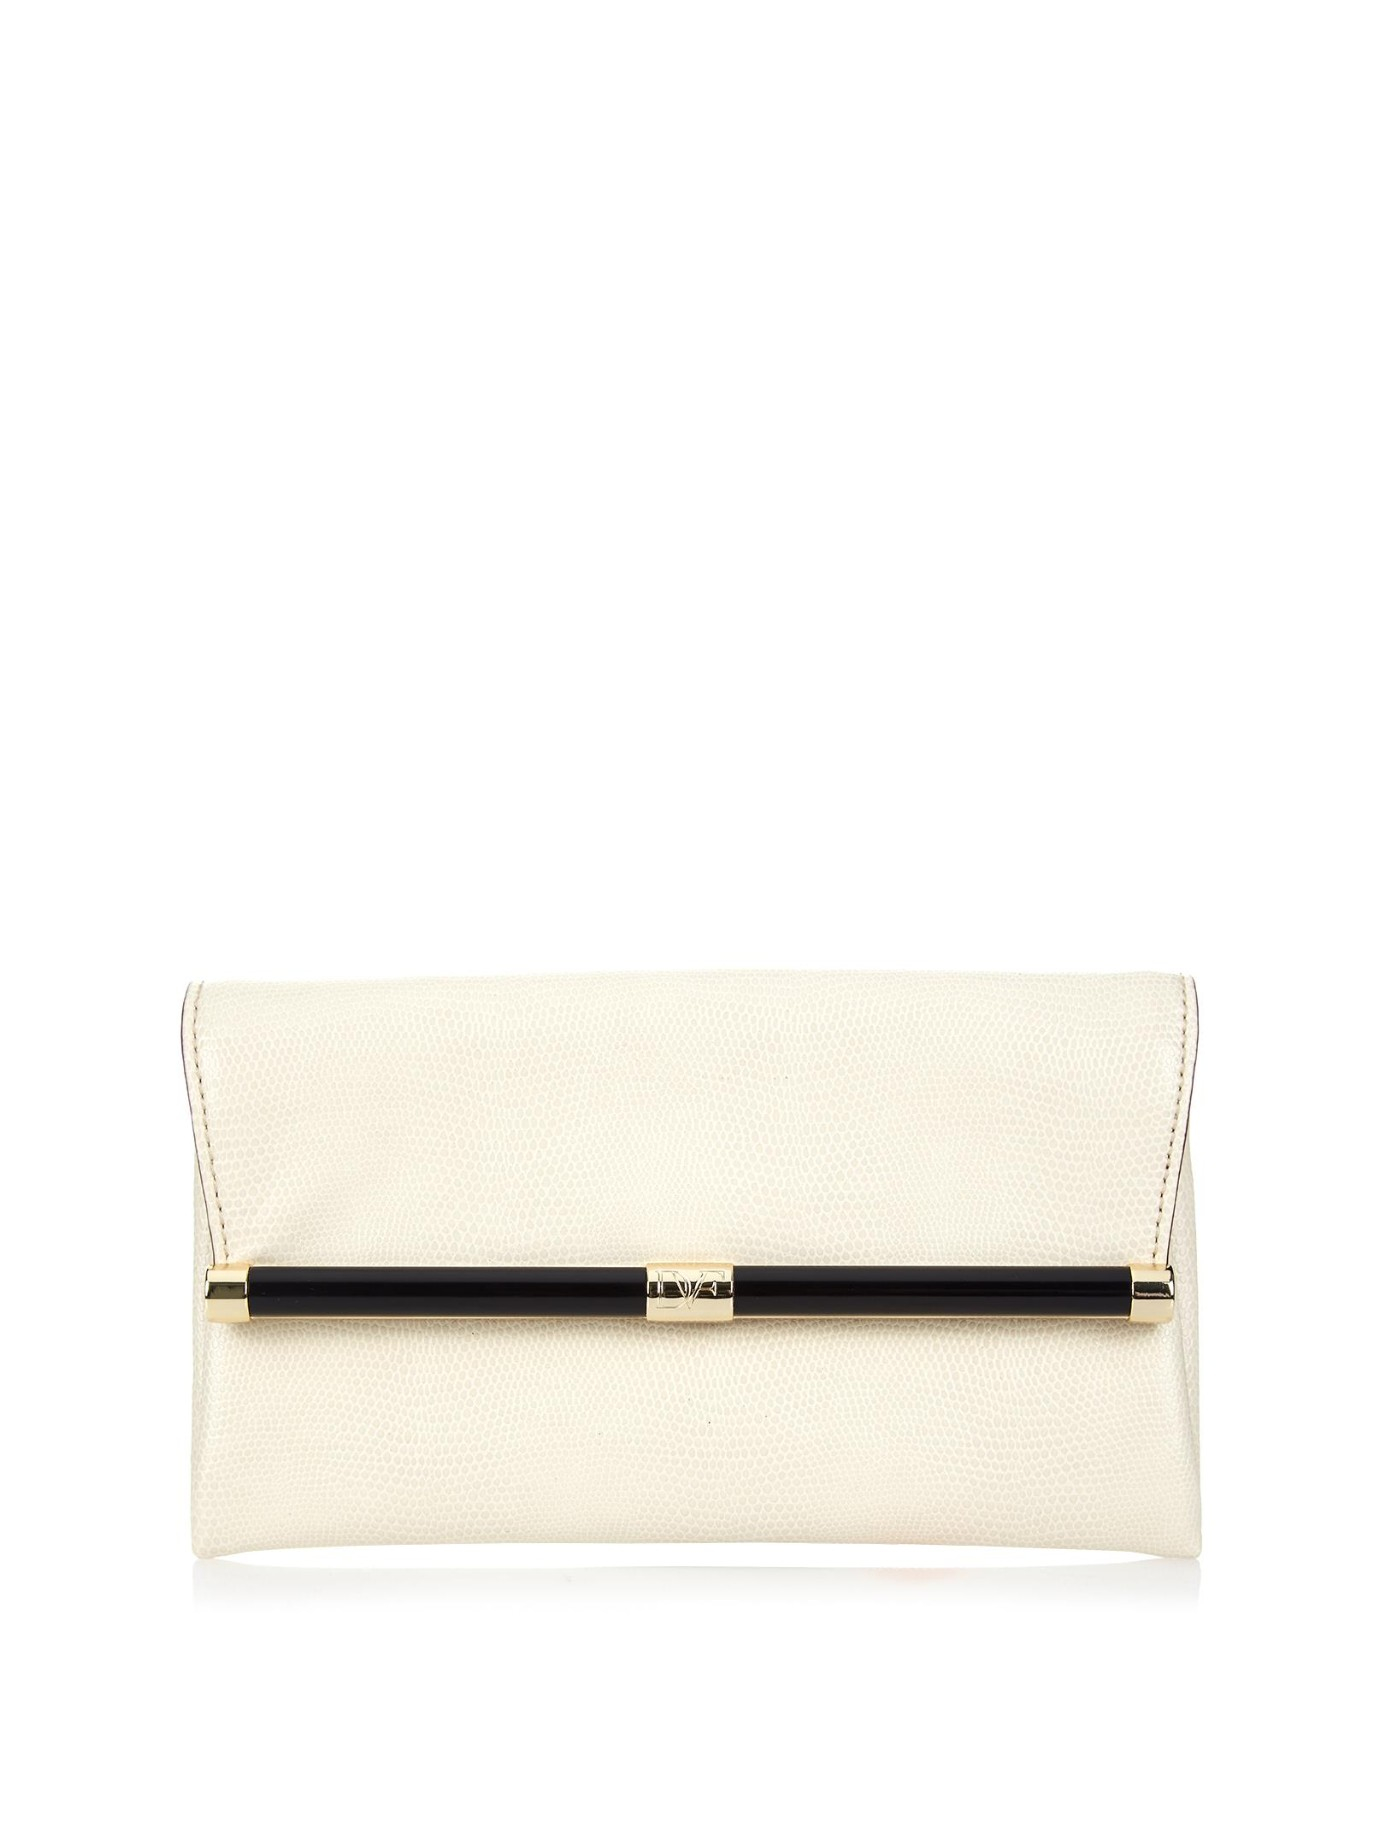 Diane von Furstenberg Leather 440 Envelope Clutch in Cream (Natural) - Lyst